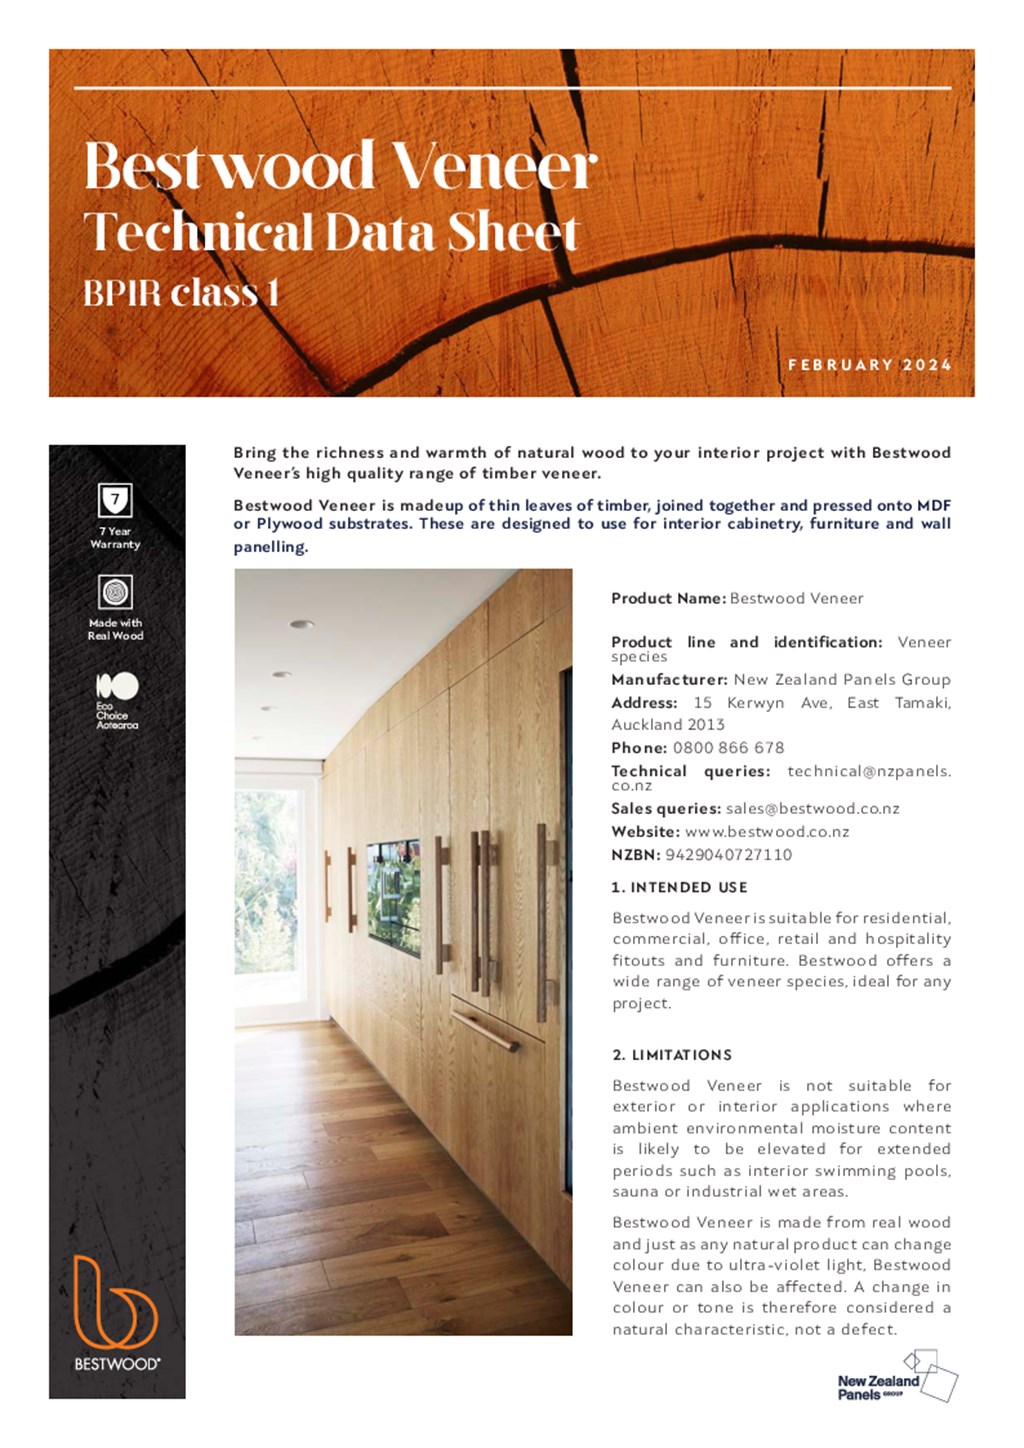 Bestwood Veneer Technical Data Sheet